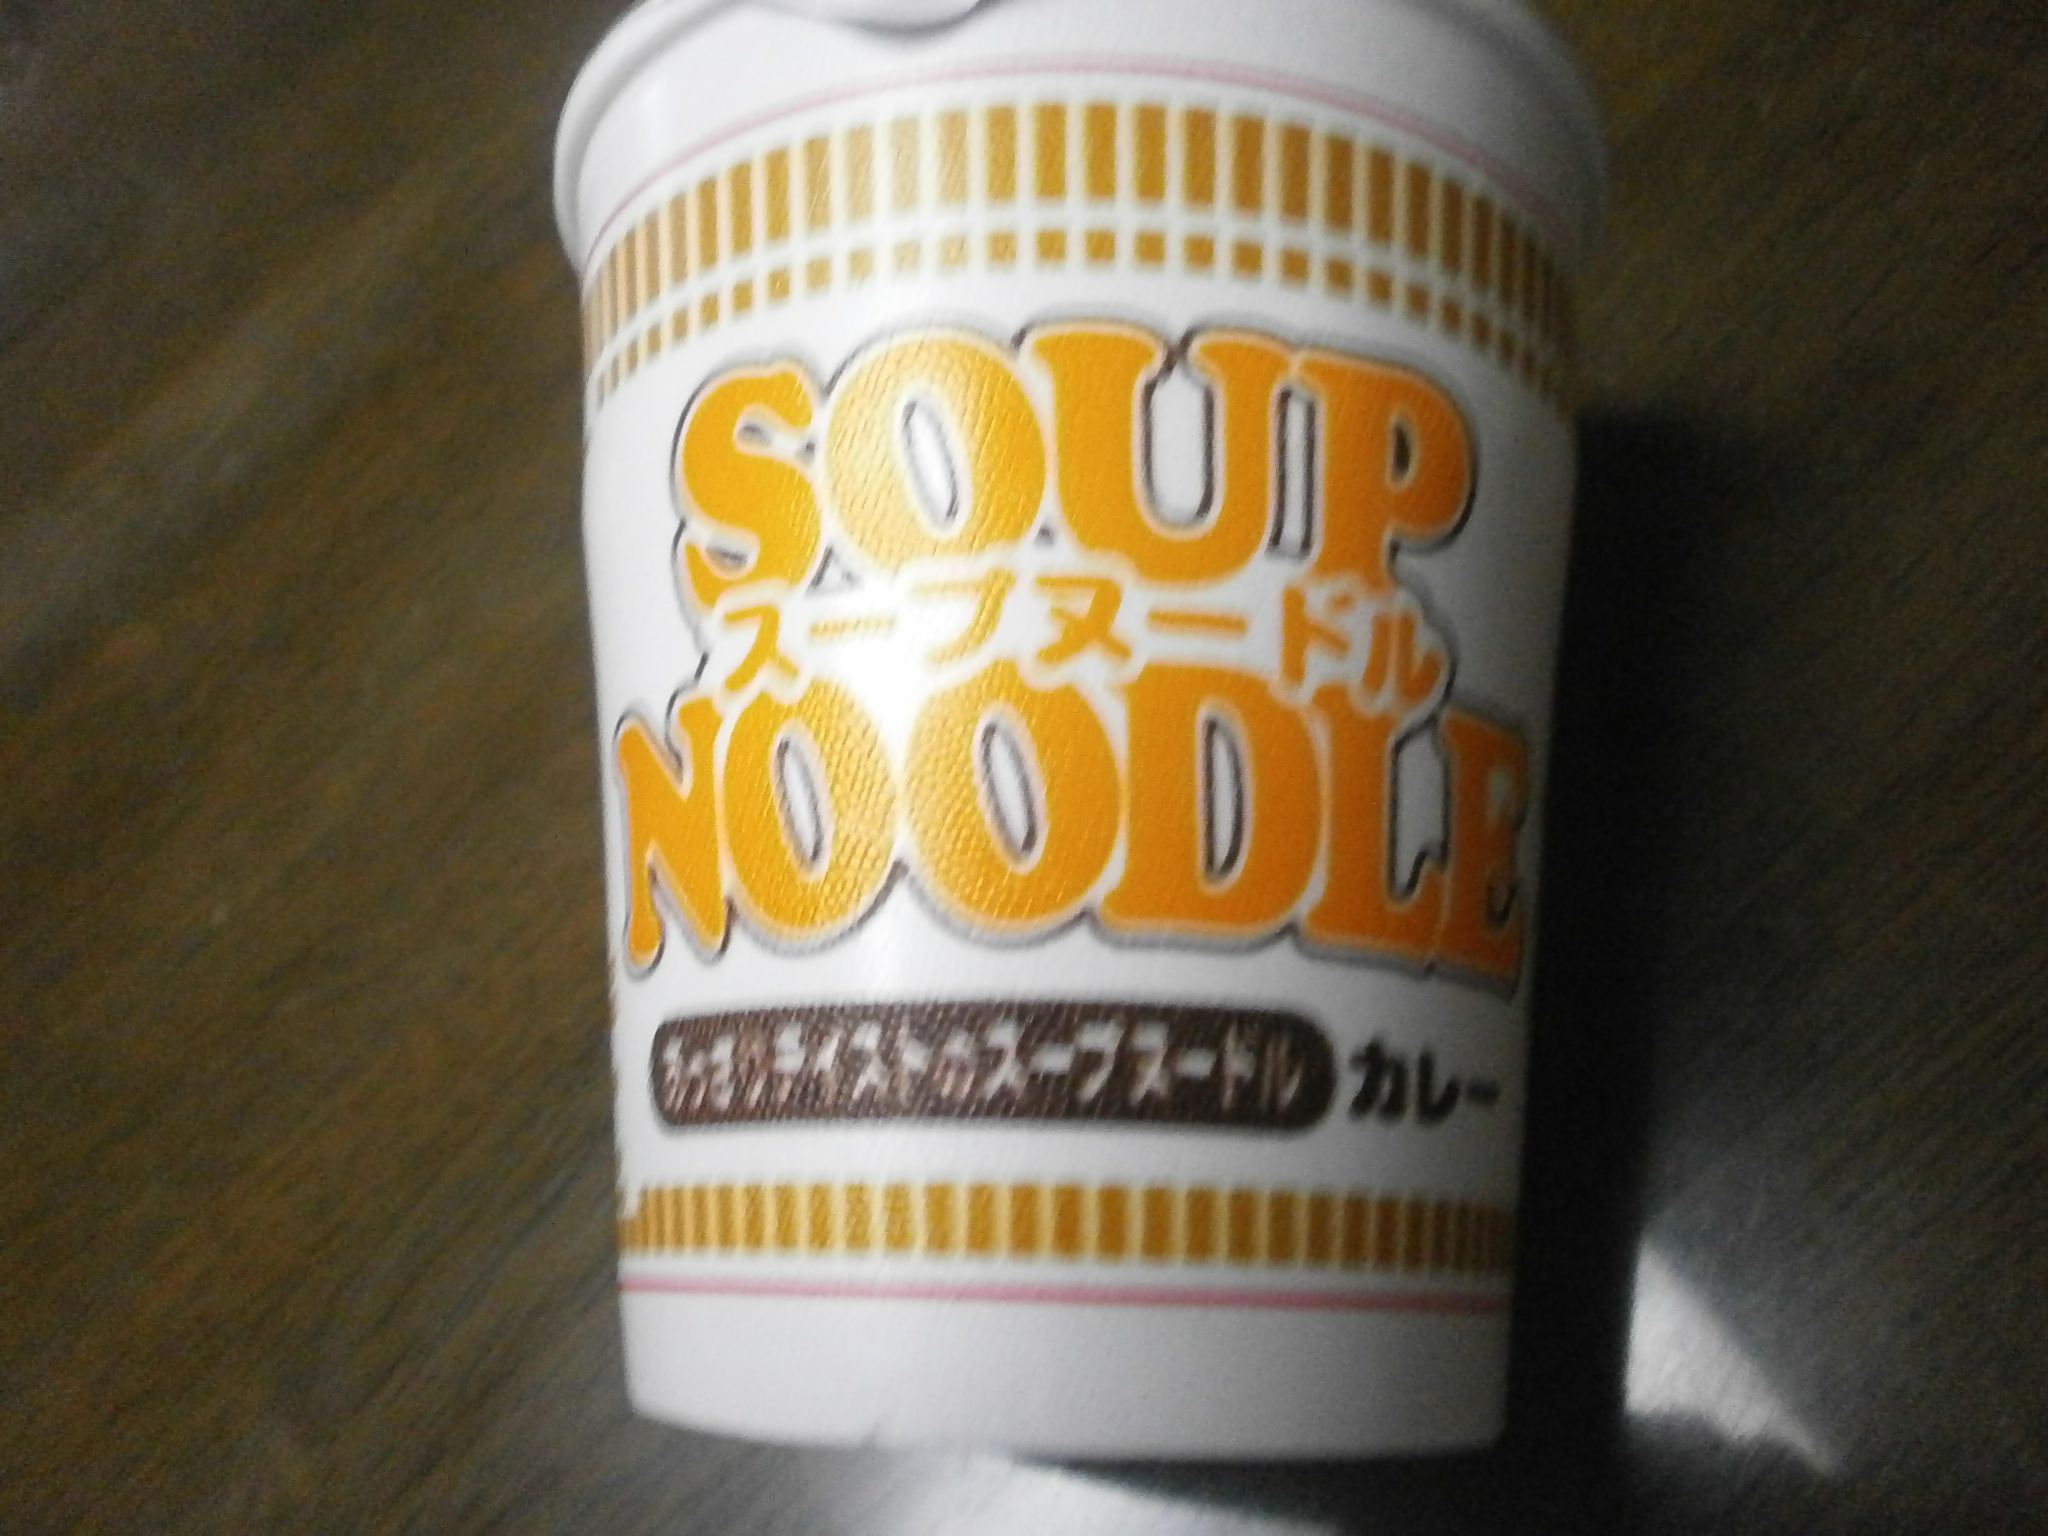 Quelle haute teneur en calories? Noodle Soup (Curry)? Soupe de nouilles (fruits de mer)?